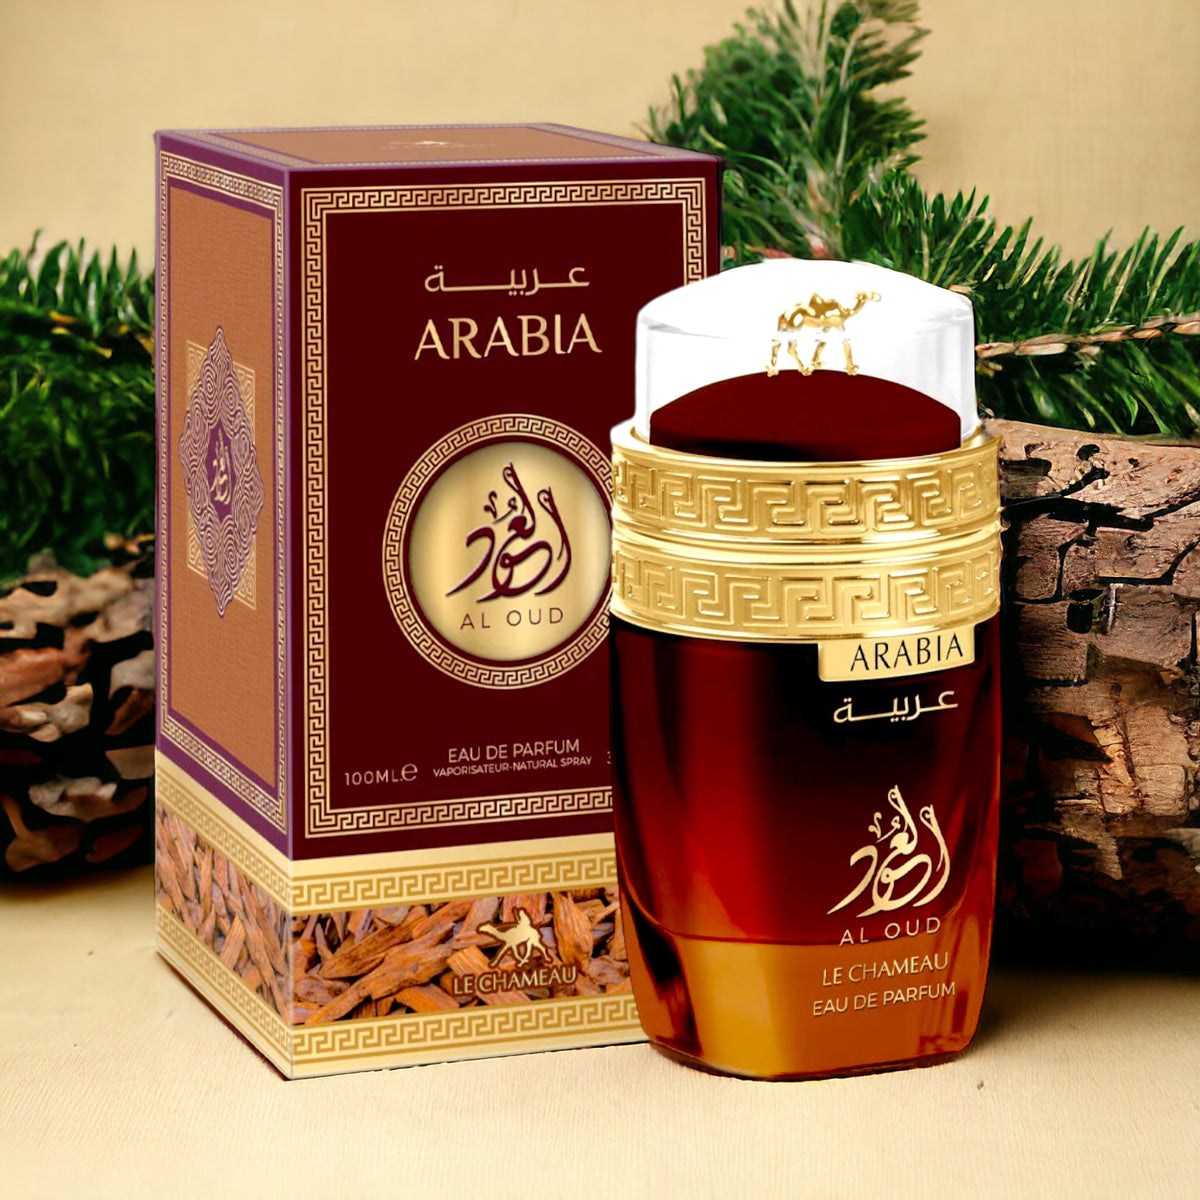 Arabia Al Oud Perfume By Le Chameau Eau De Parfum 3.4 Oz